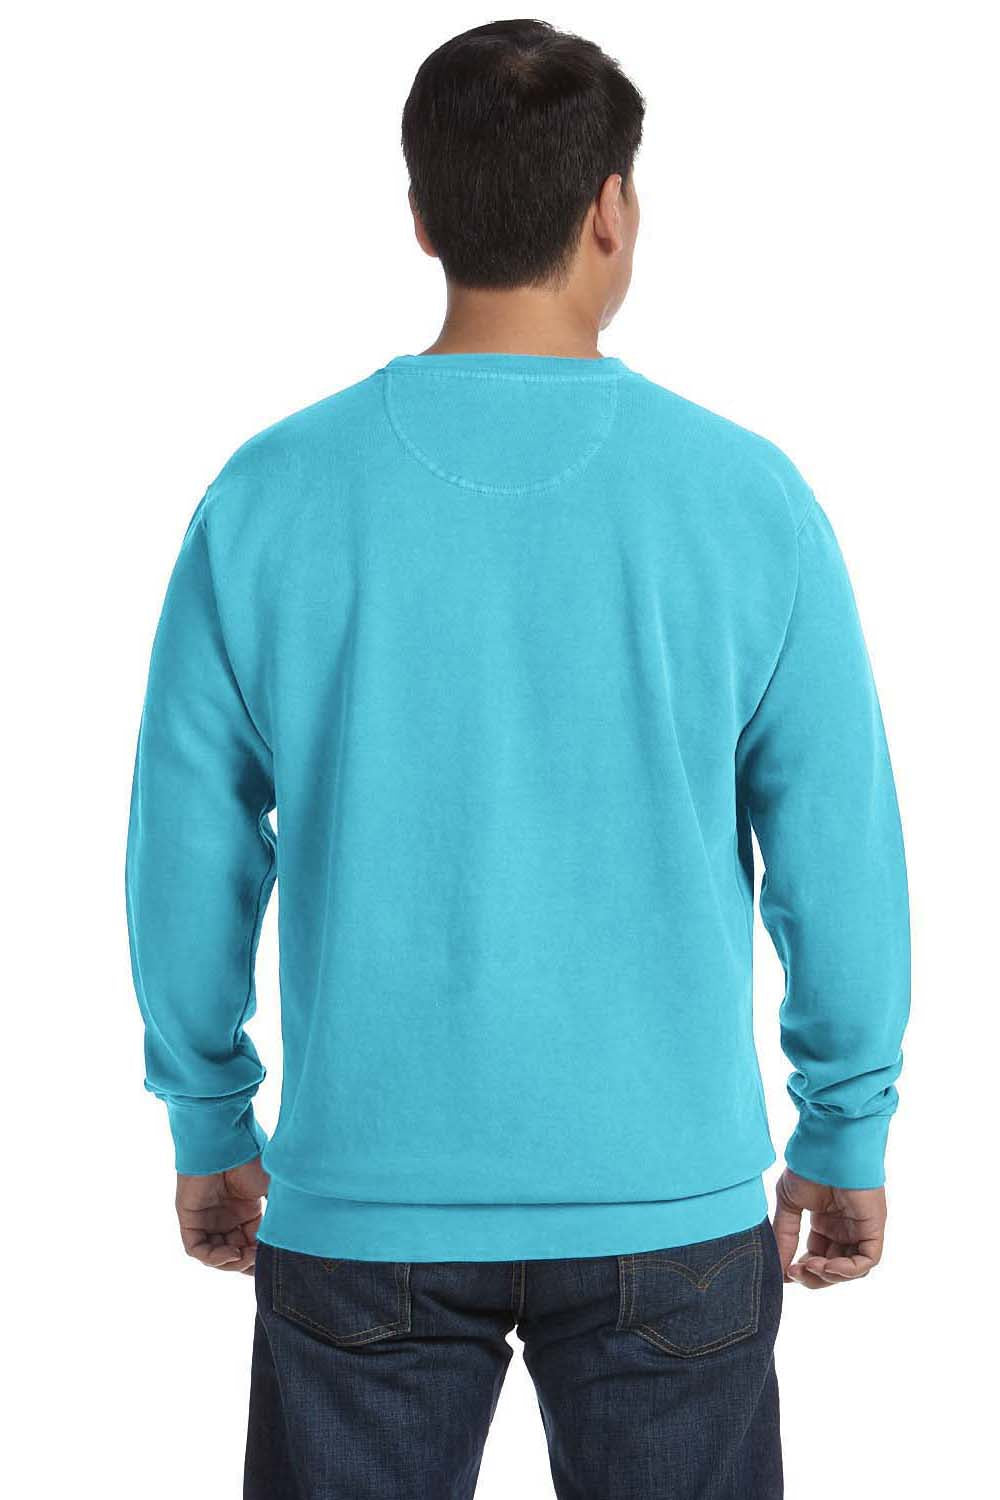 Comfort Colors 1566 Mens Crewneck Sweatshirt Lagoon Blue Back